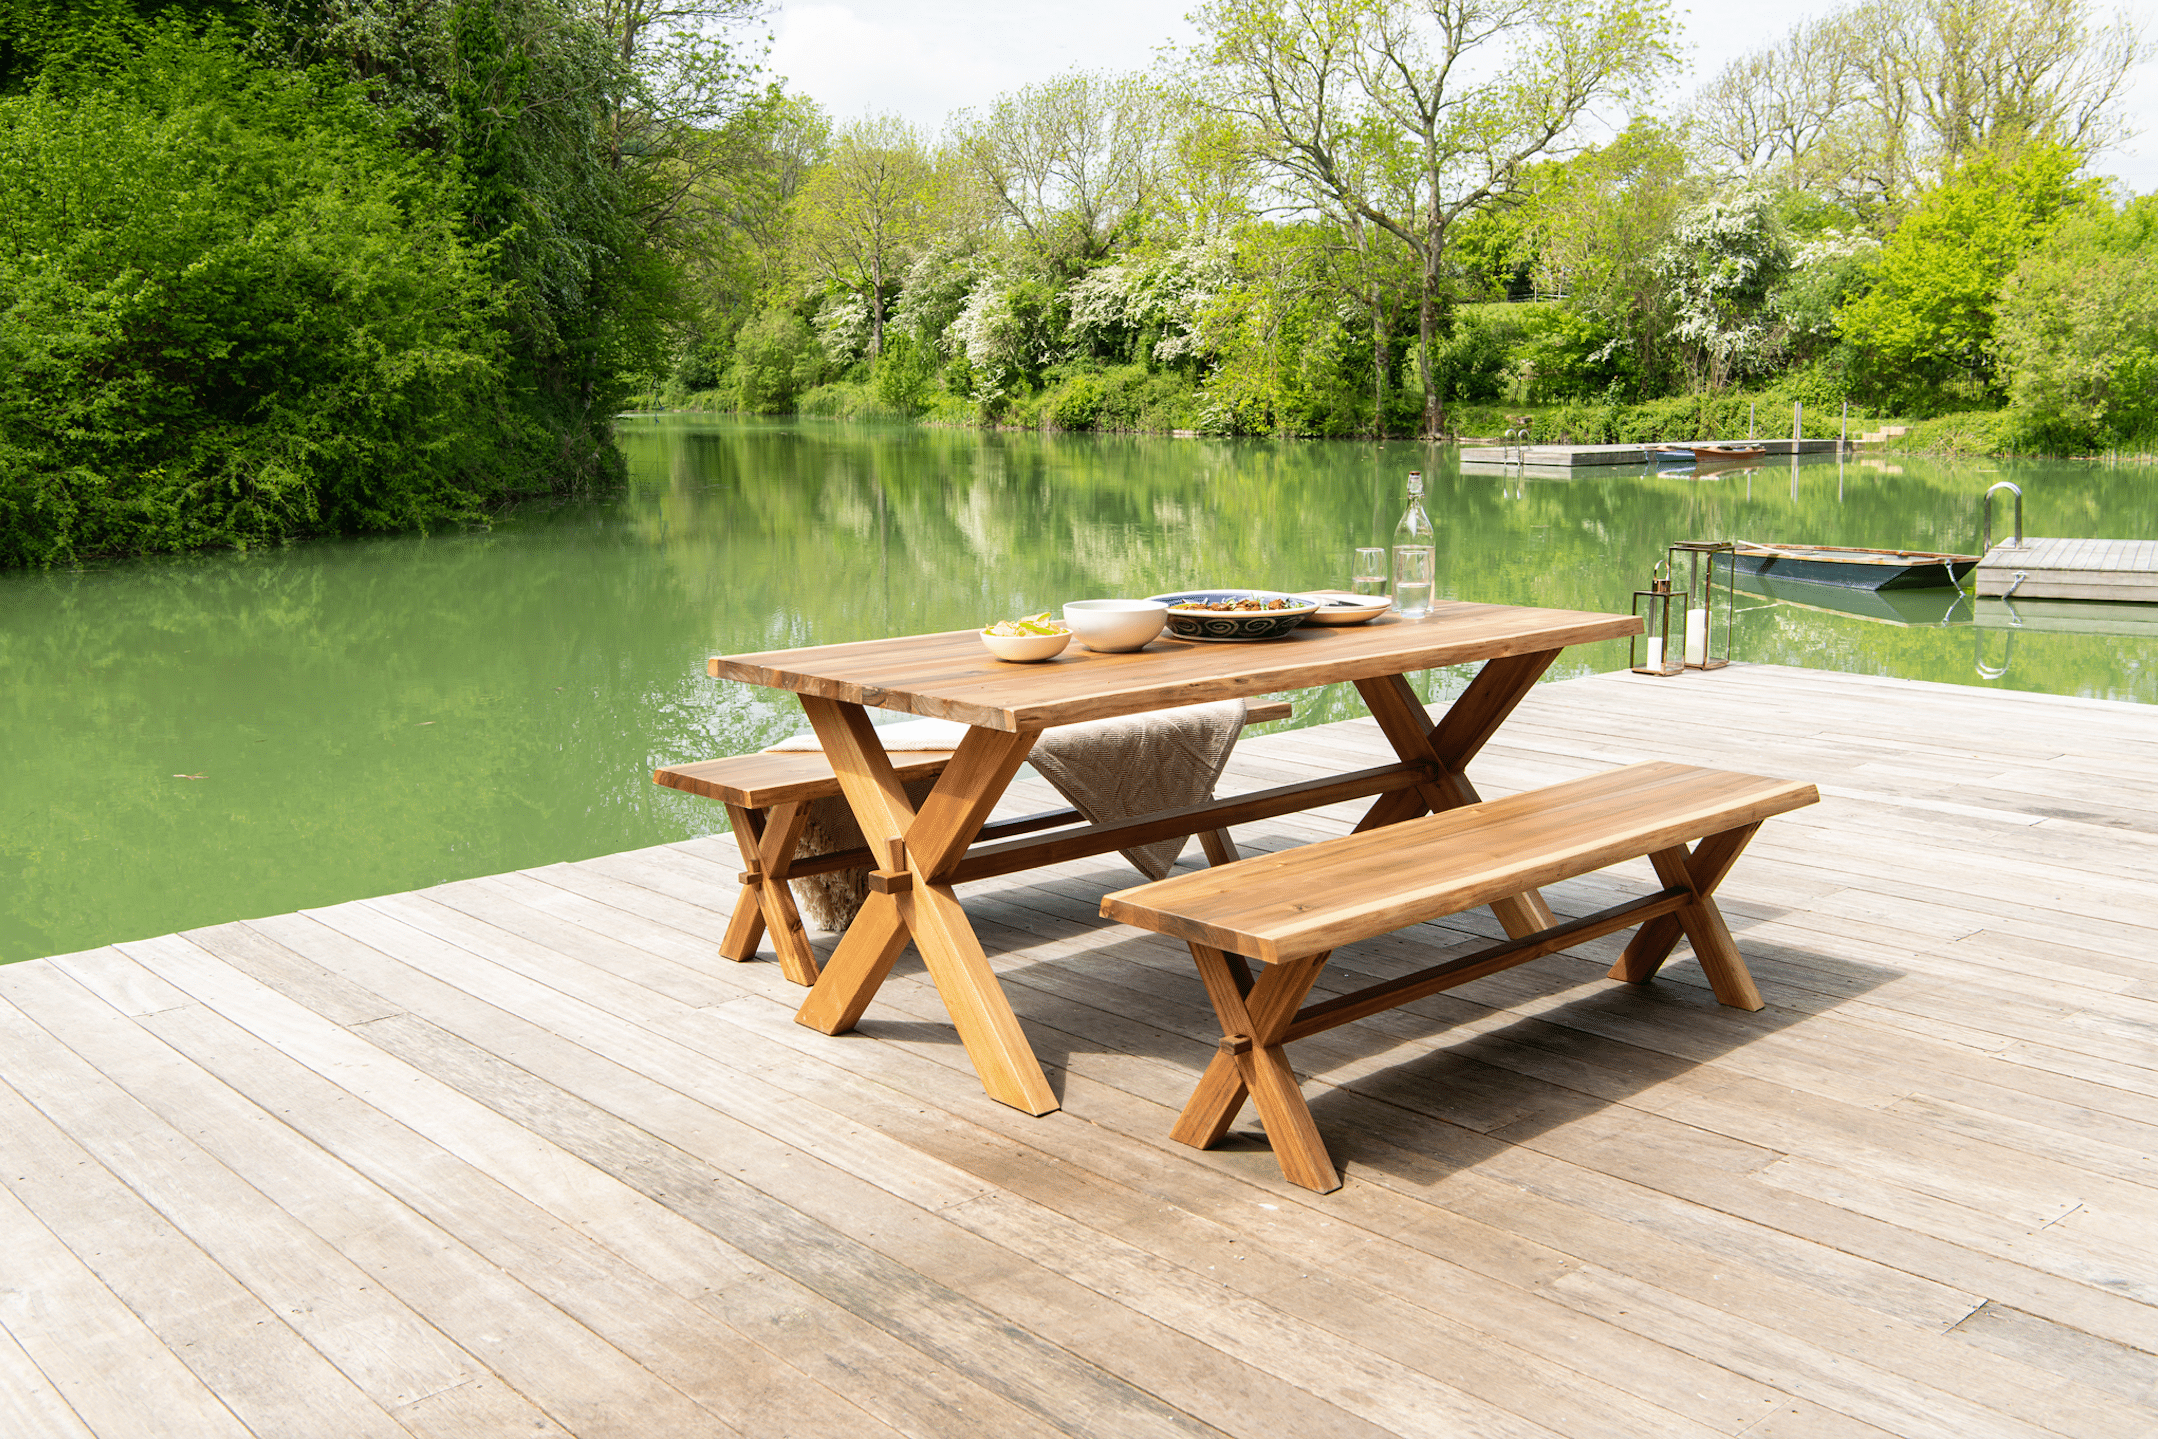 WOHNHAUS Grill & Ronacher zeigt eine gemütliche Sitzgruppe aus Holz mit einem großen Tisch und zwei Sitzbänken auf einem Holzboden mit Zugang zu einem See von Alexander Rose.